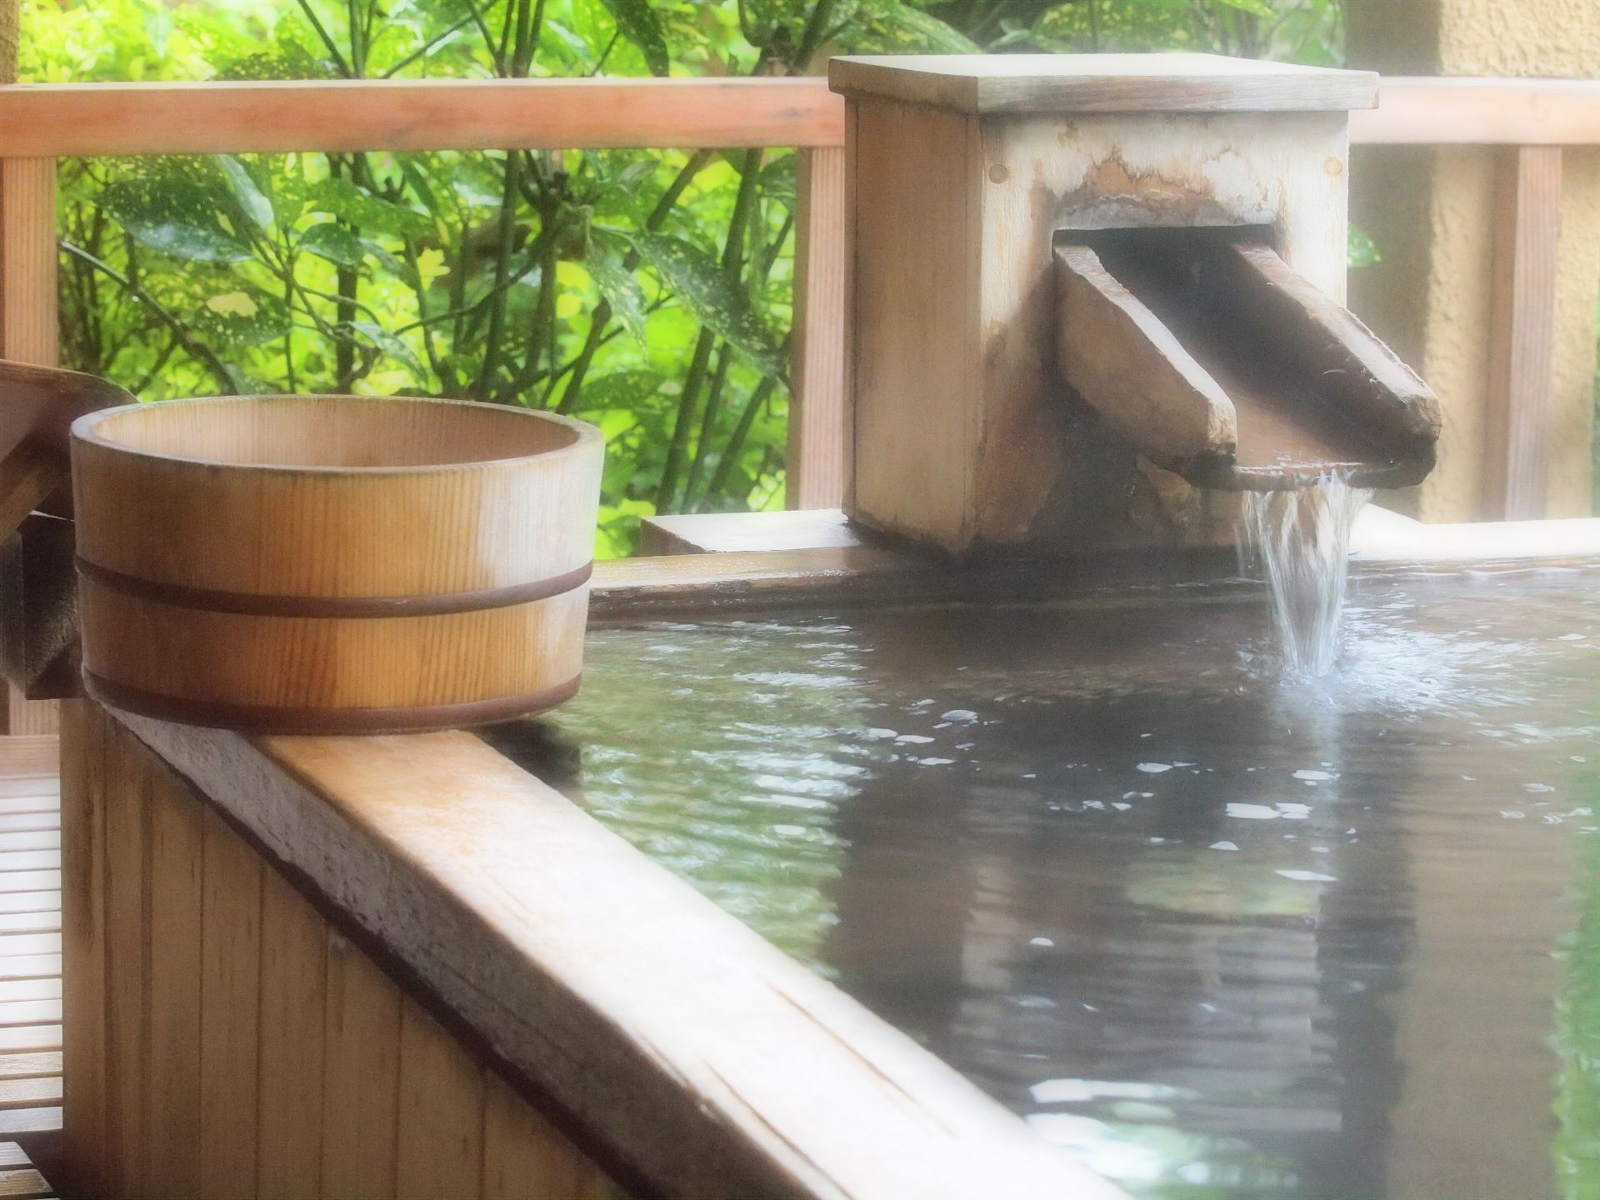 露天風呂付き客室や豊富な宿泊プランを持つ嵐山温泉「花筏」が解説・露天風呂の楽しみ方